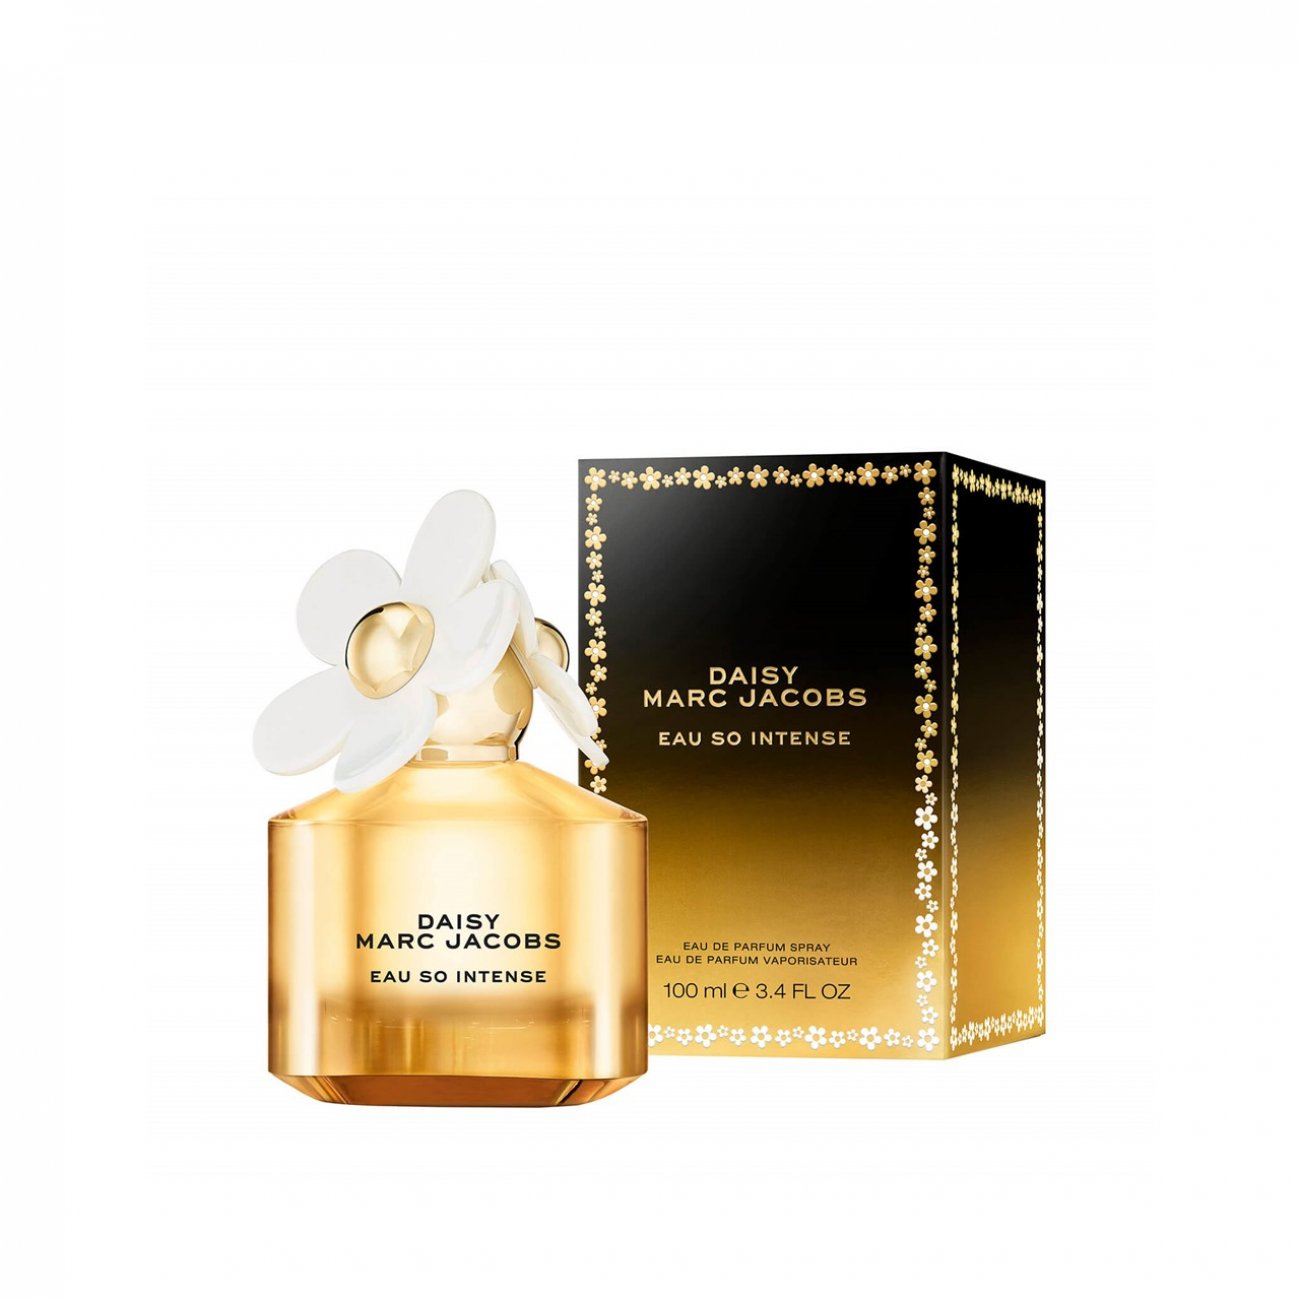 Buy Marc Jacobs Daisy Eau So Intense Eau de Parfum · Germany